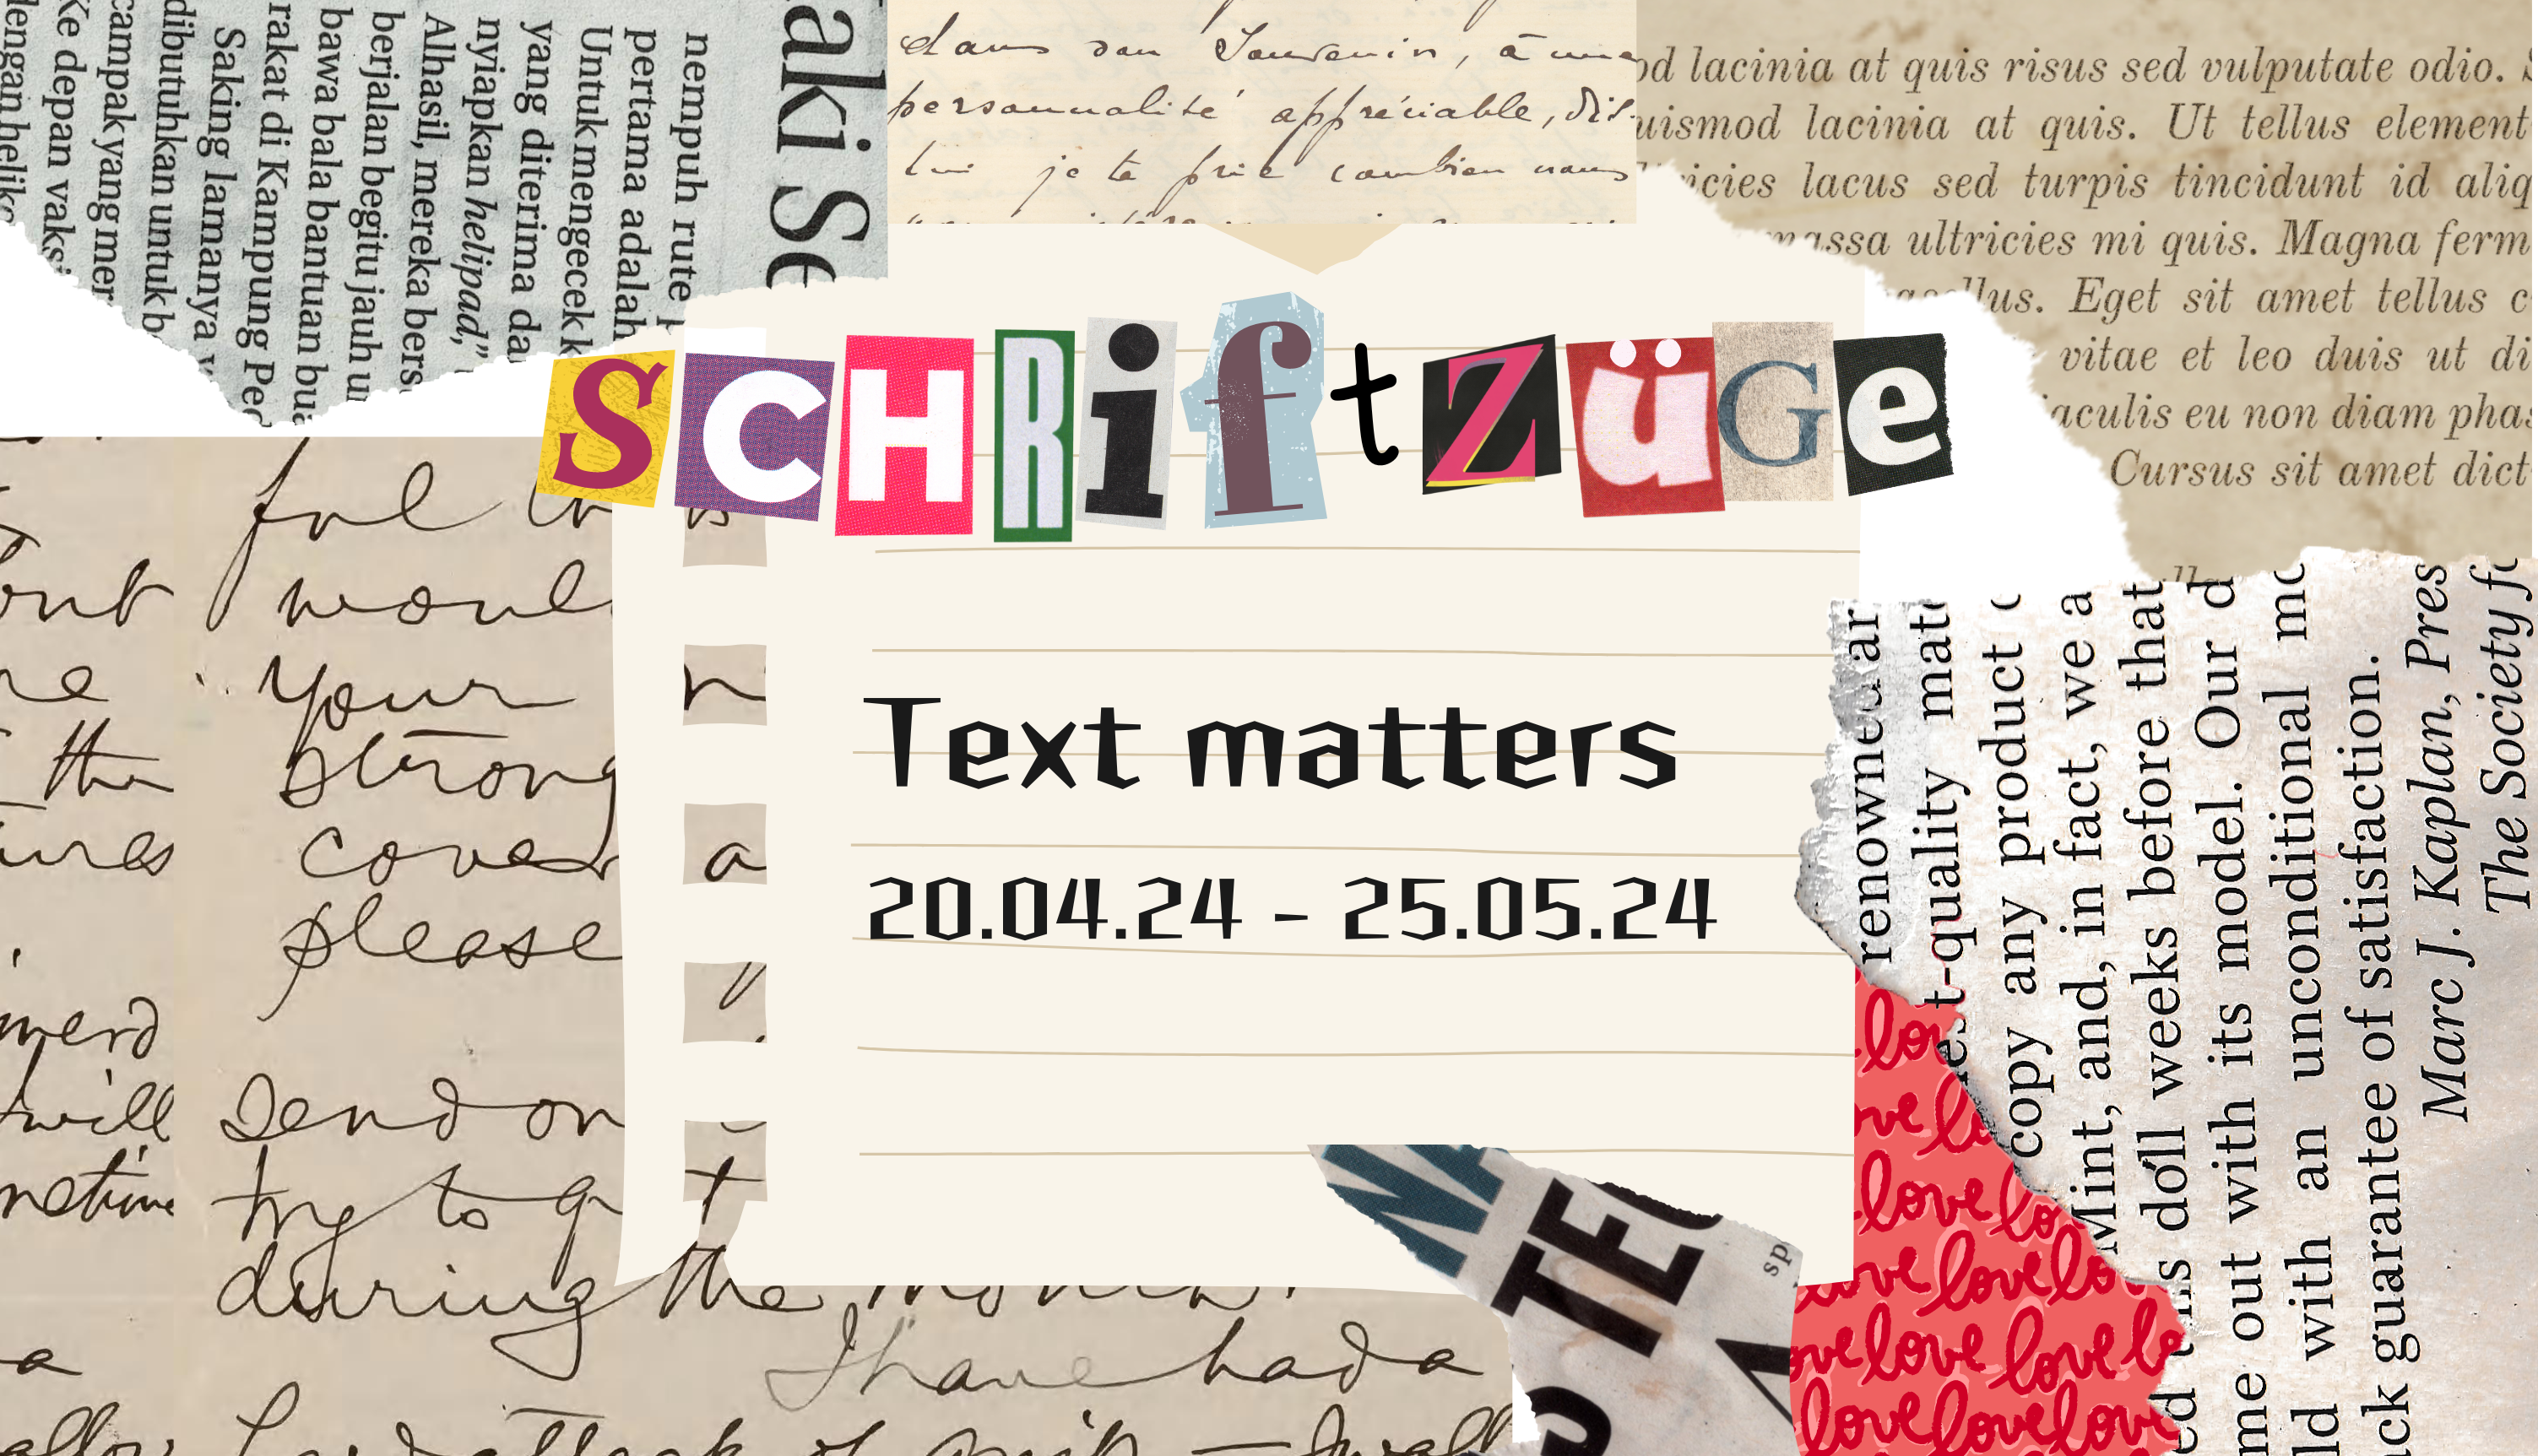 schriftzuge-text-matters-galerie-dumas-linz